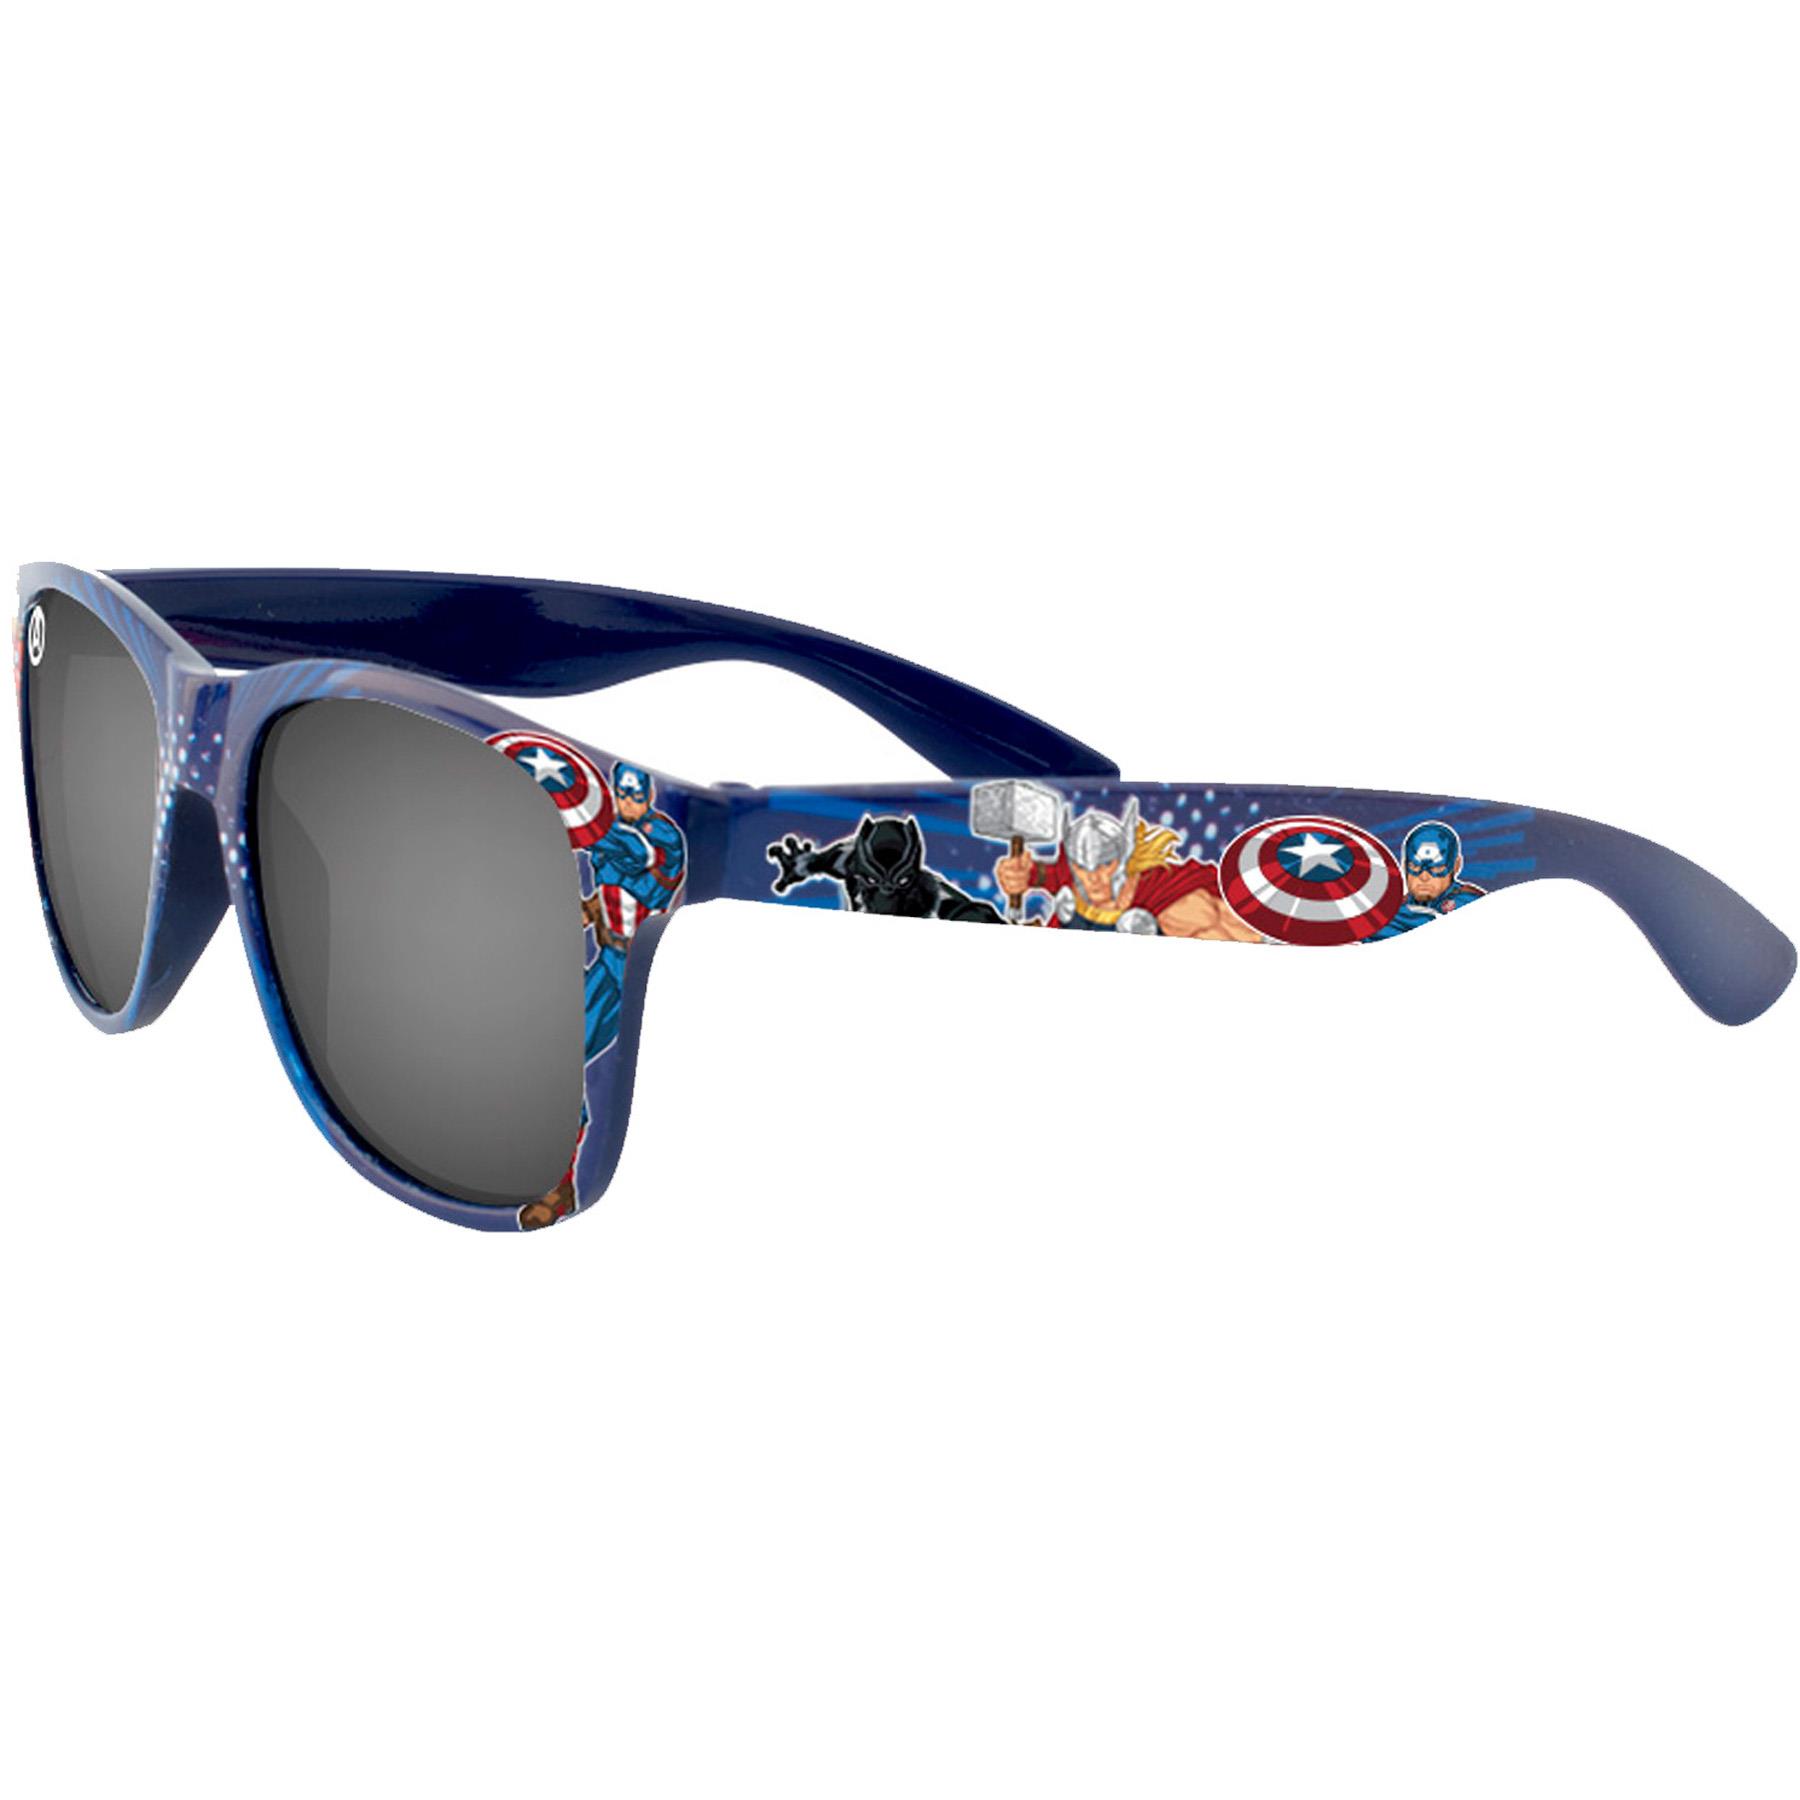 Superheroes Children's Sunglasses UV protection for Holiday - Marvel Avengers AVENG13